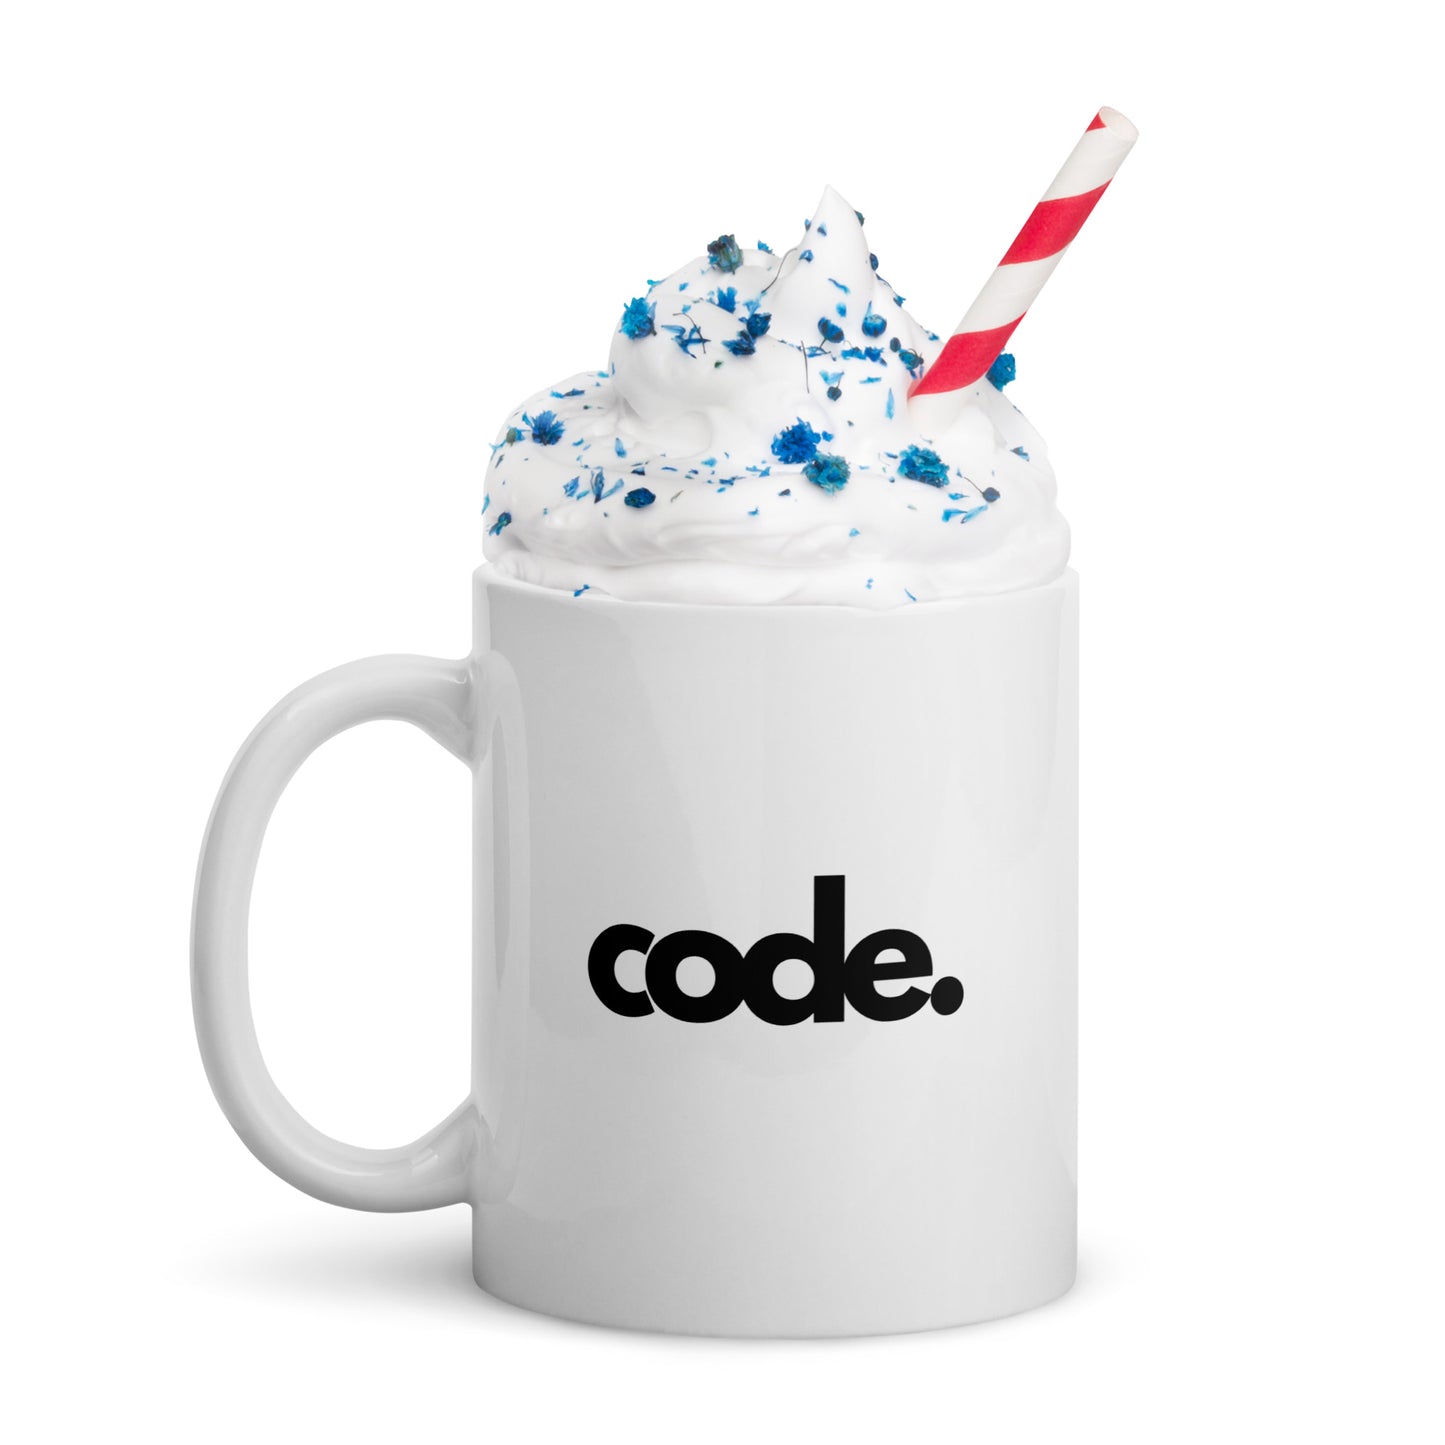 "CODE" White glossy mug The Developer Shop